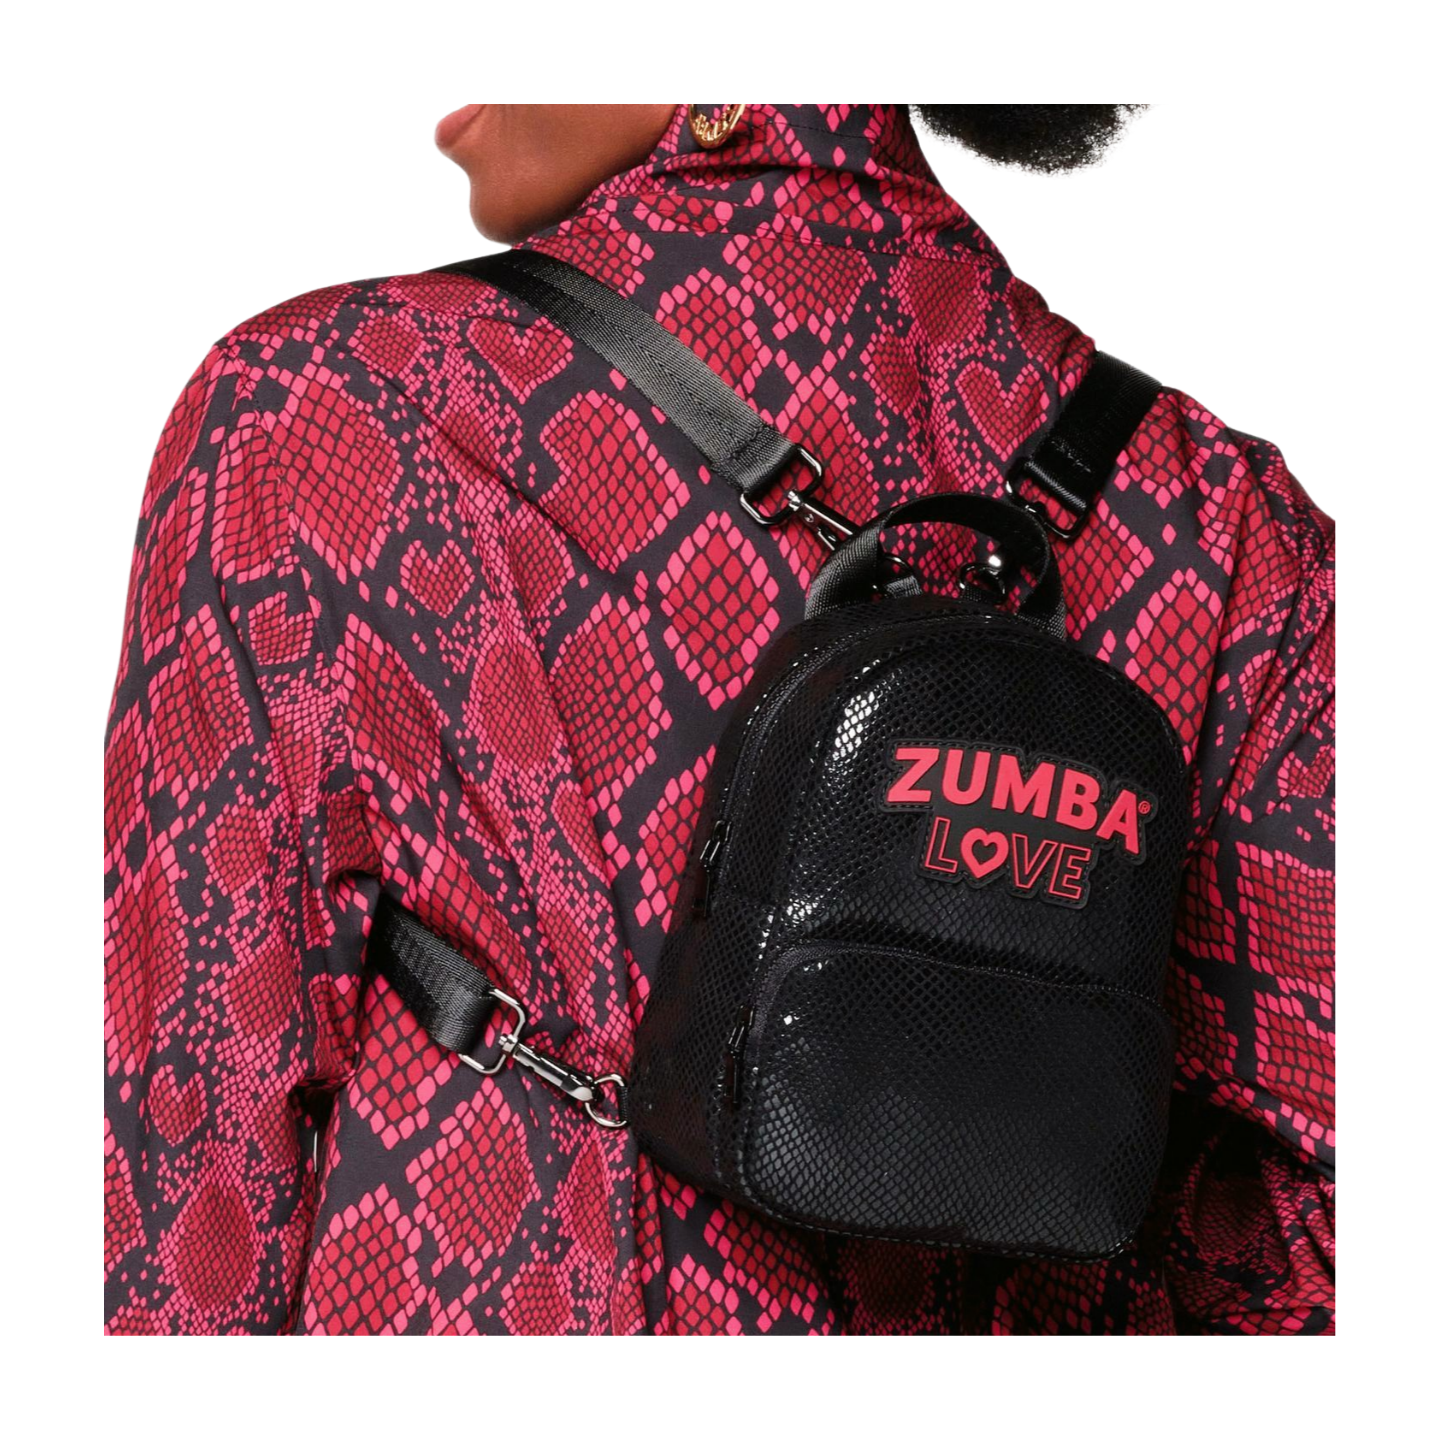 Zumba Love Mini Backpack